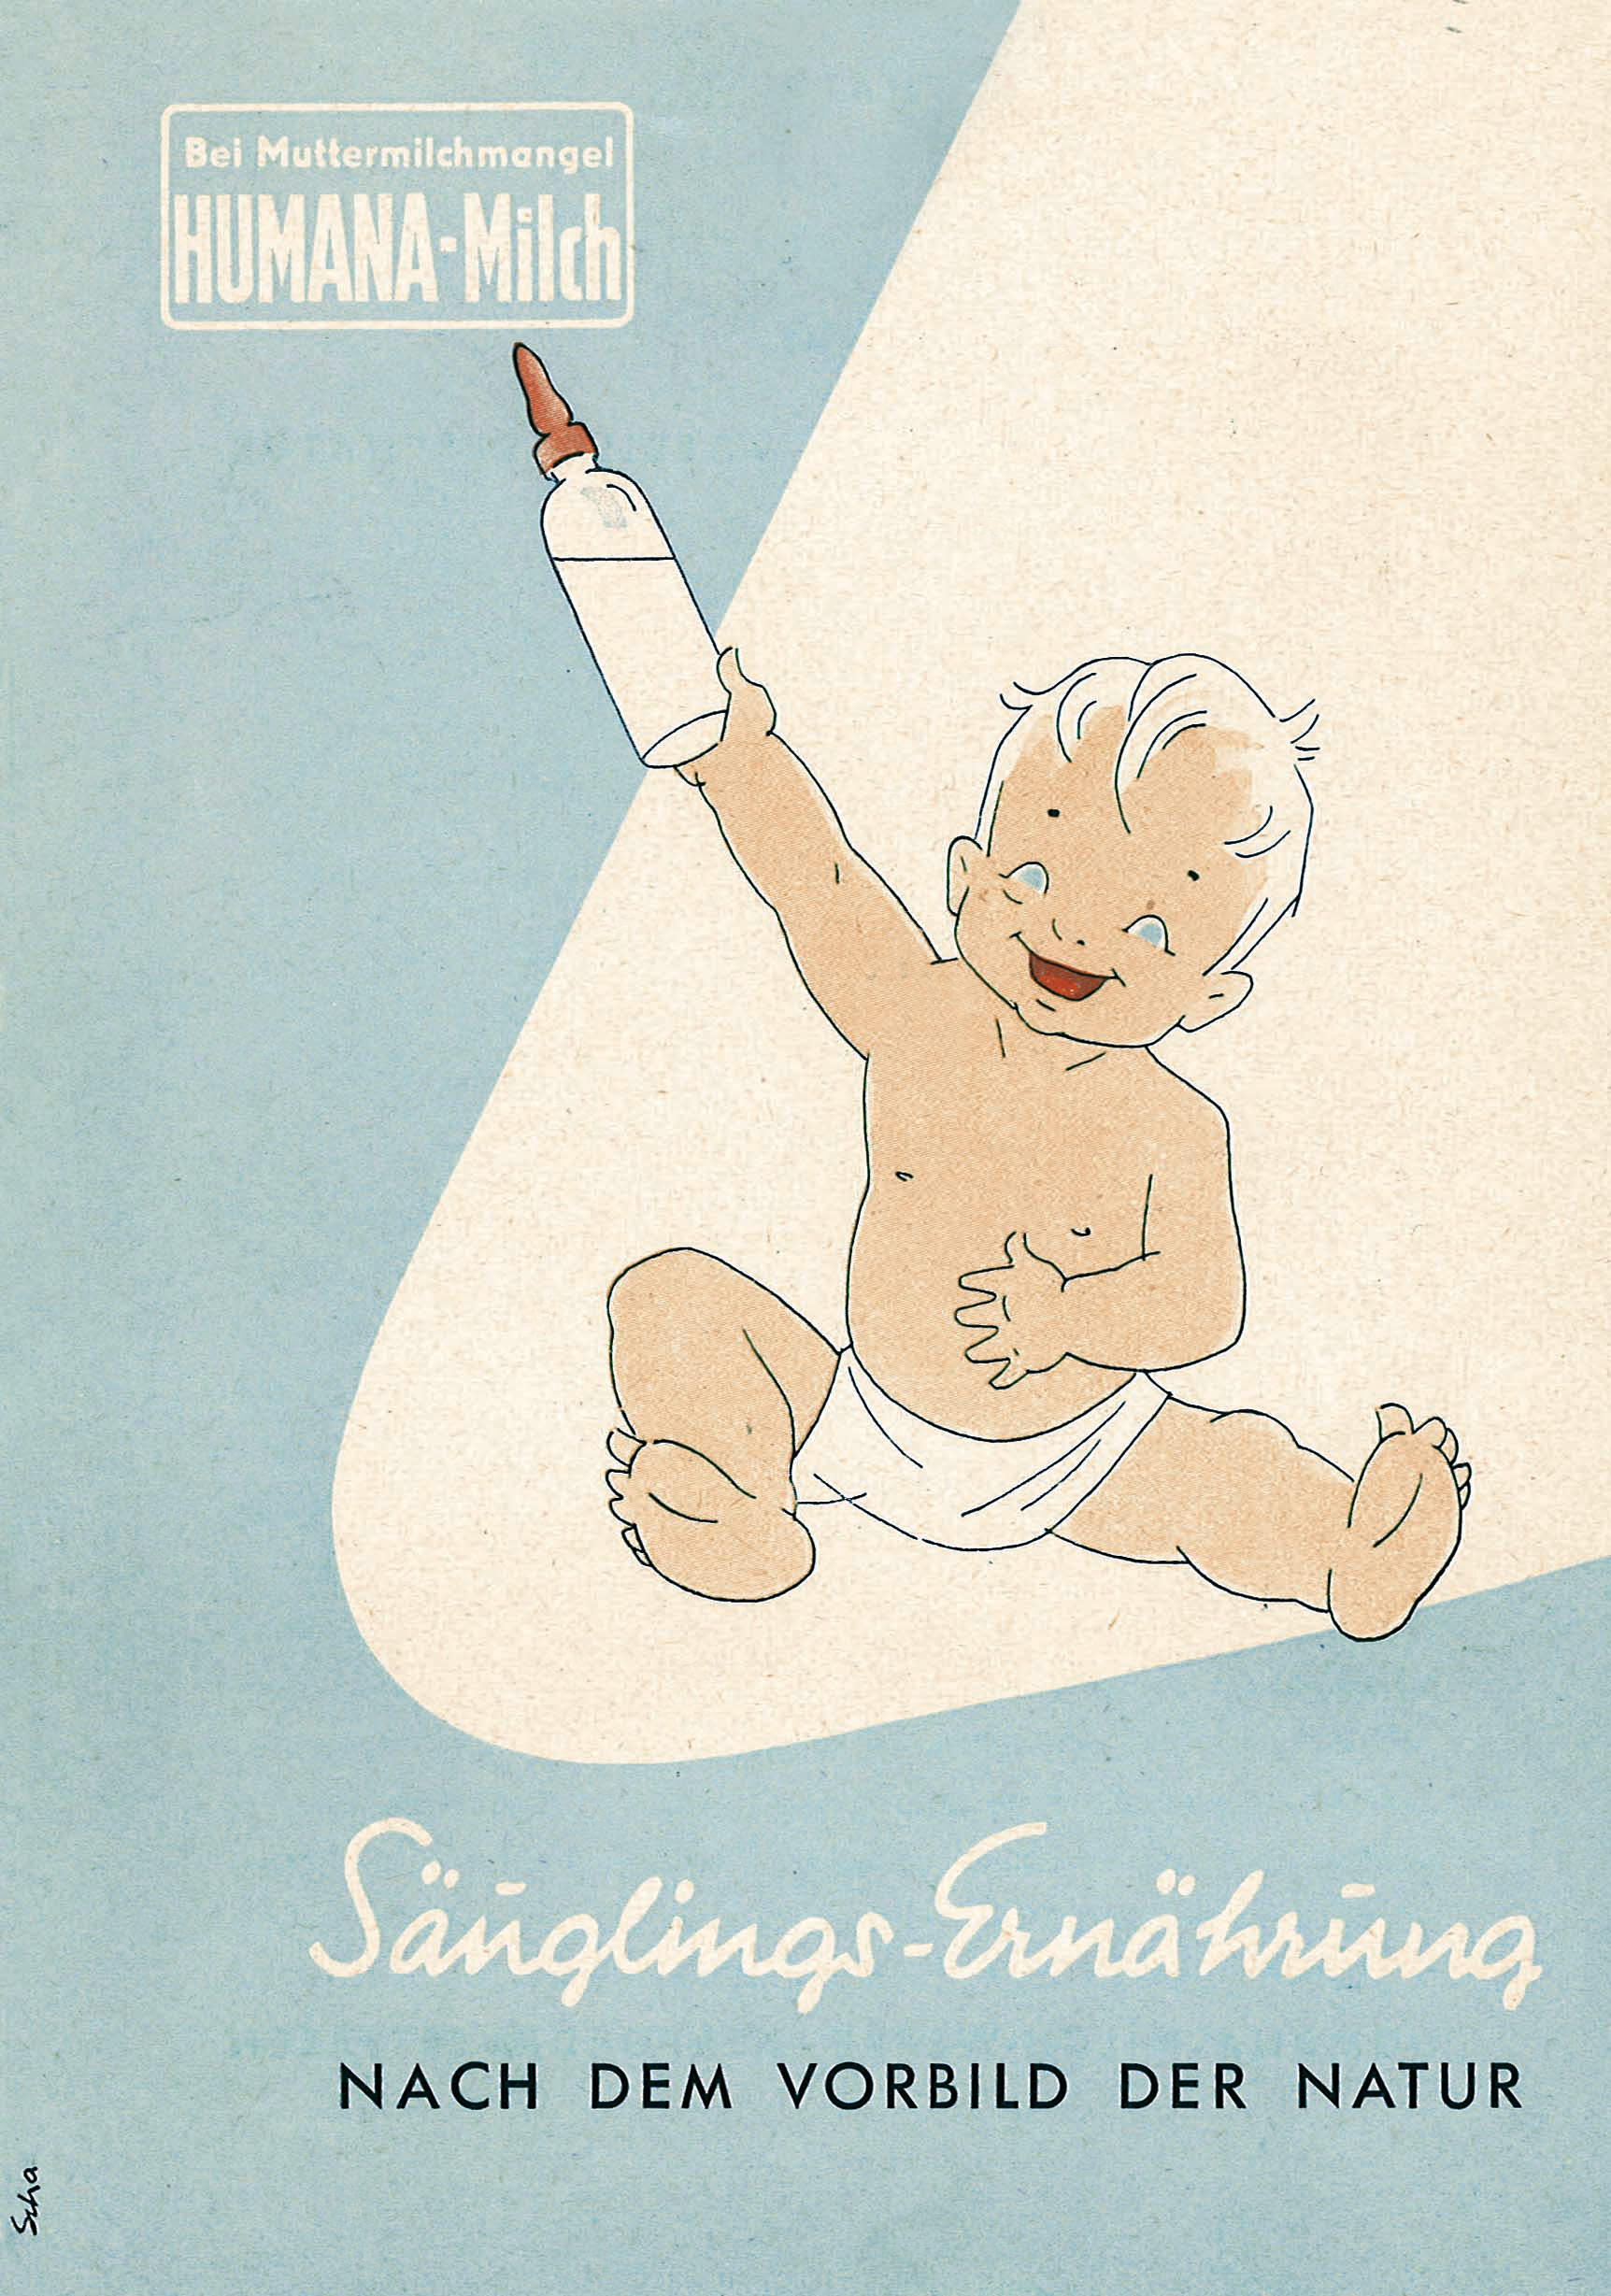 Cartel ilustrado Humana baby antiguo